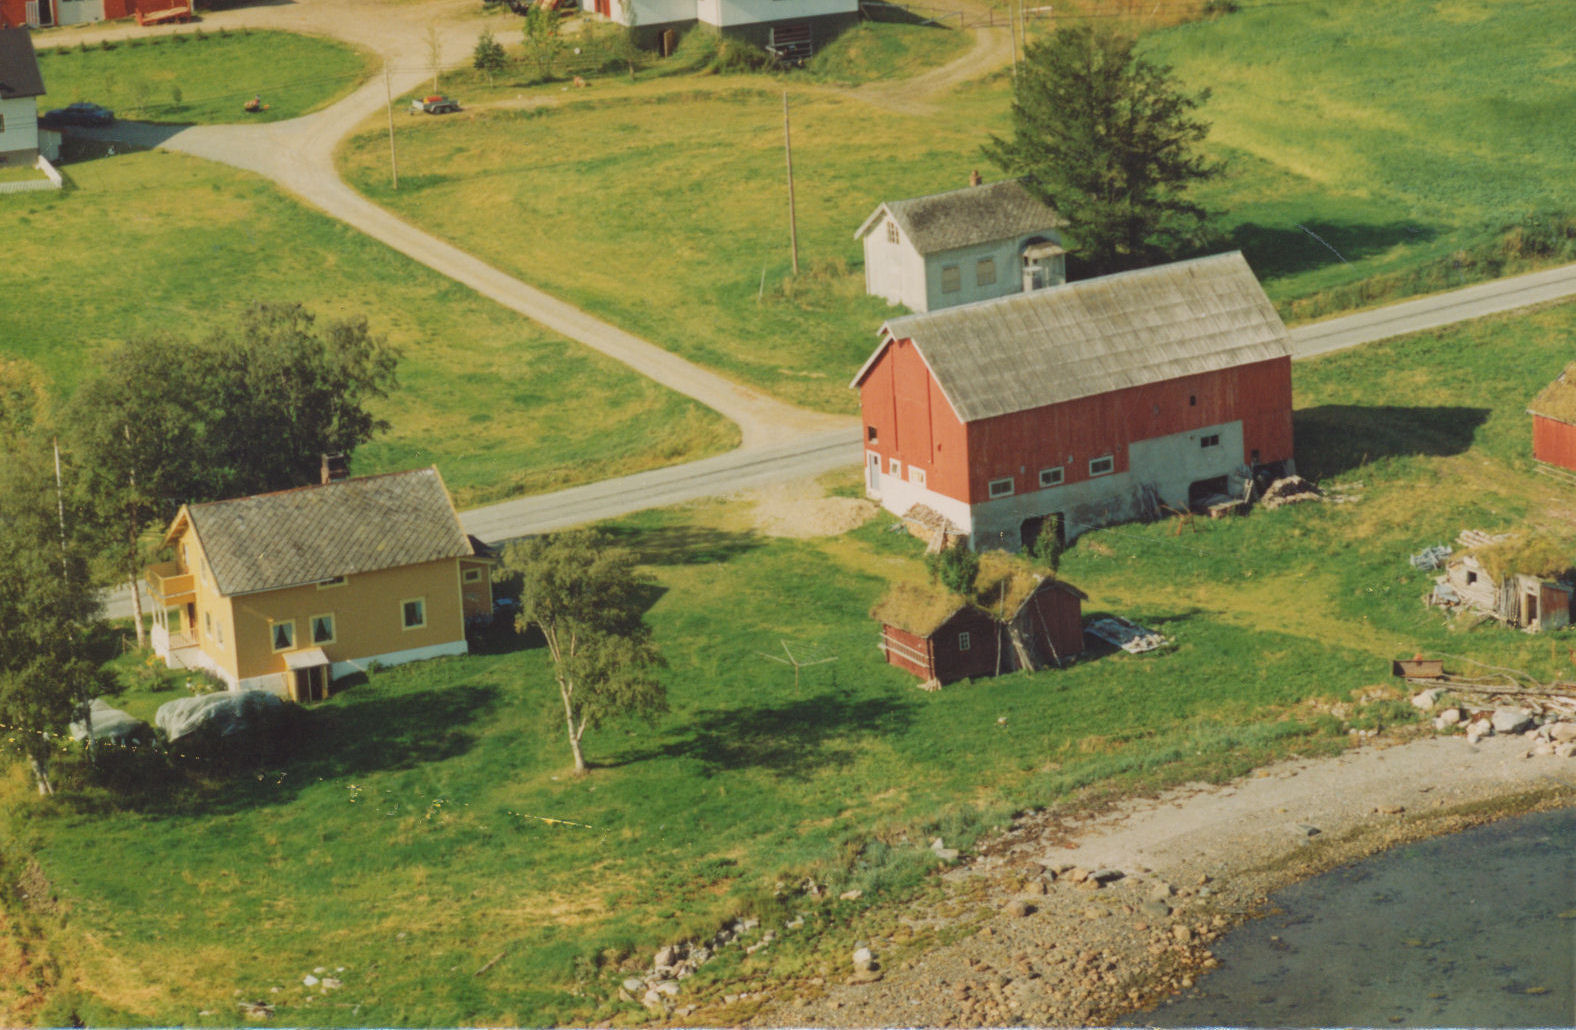   the farm